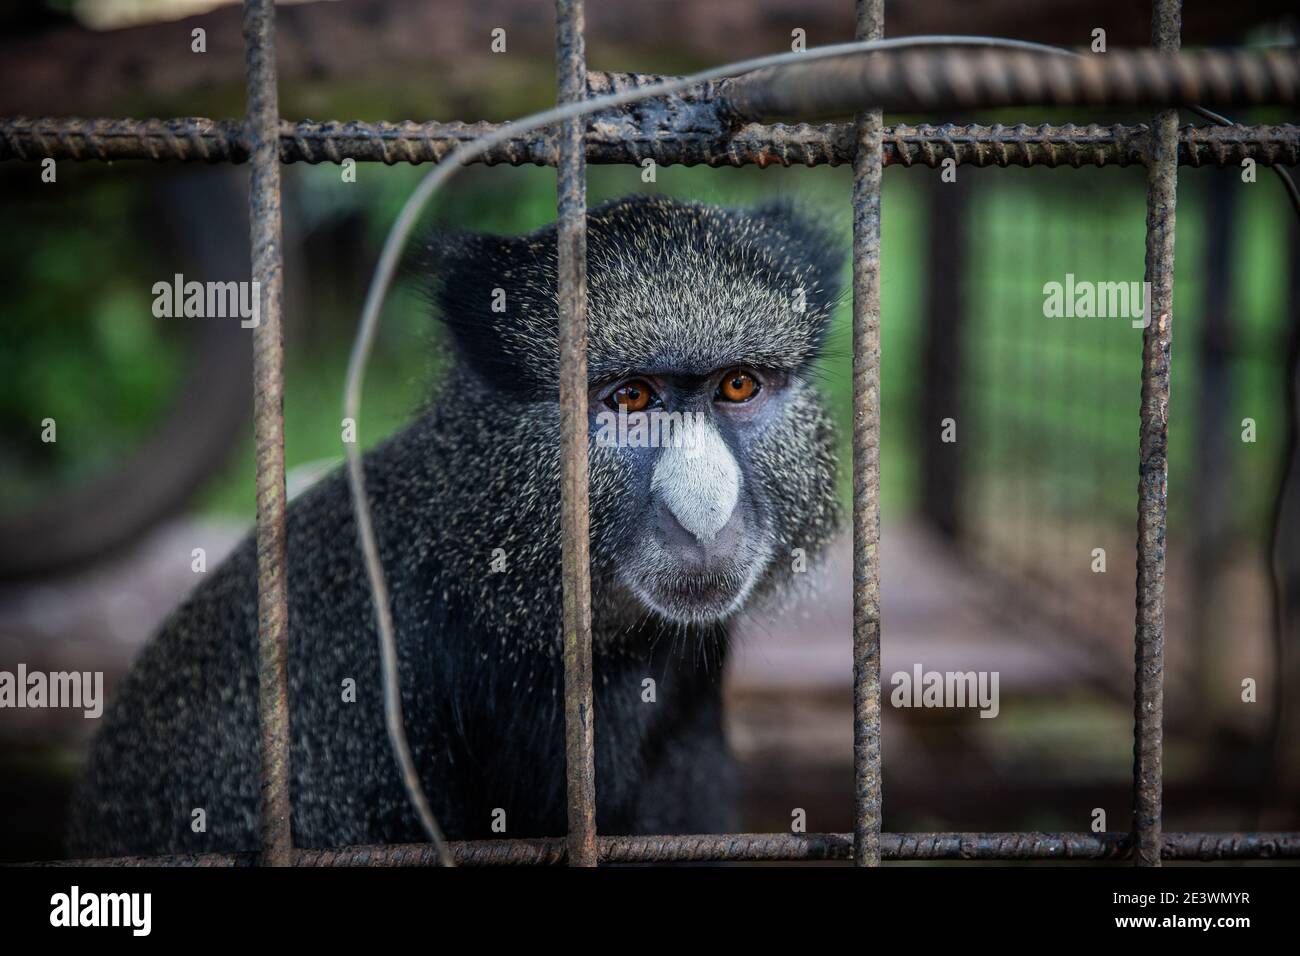 Portrait d'un Cercopithecus kandti, un type de singe, enfermé dans une cage. Concept des droits des animaux Banque D'Images